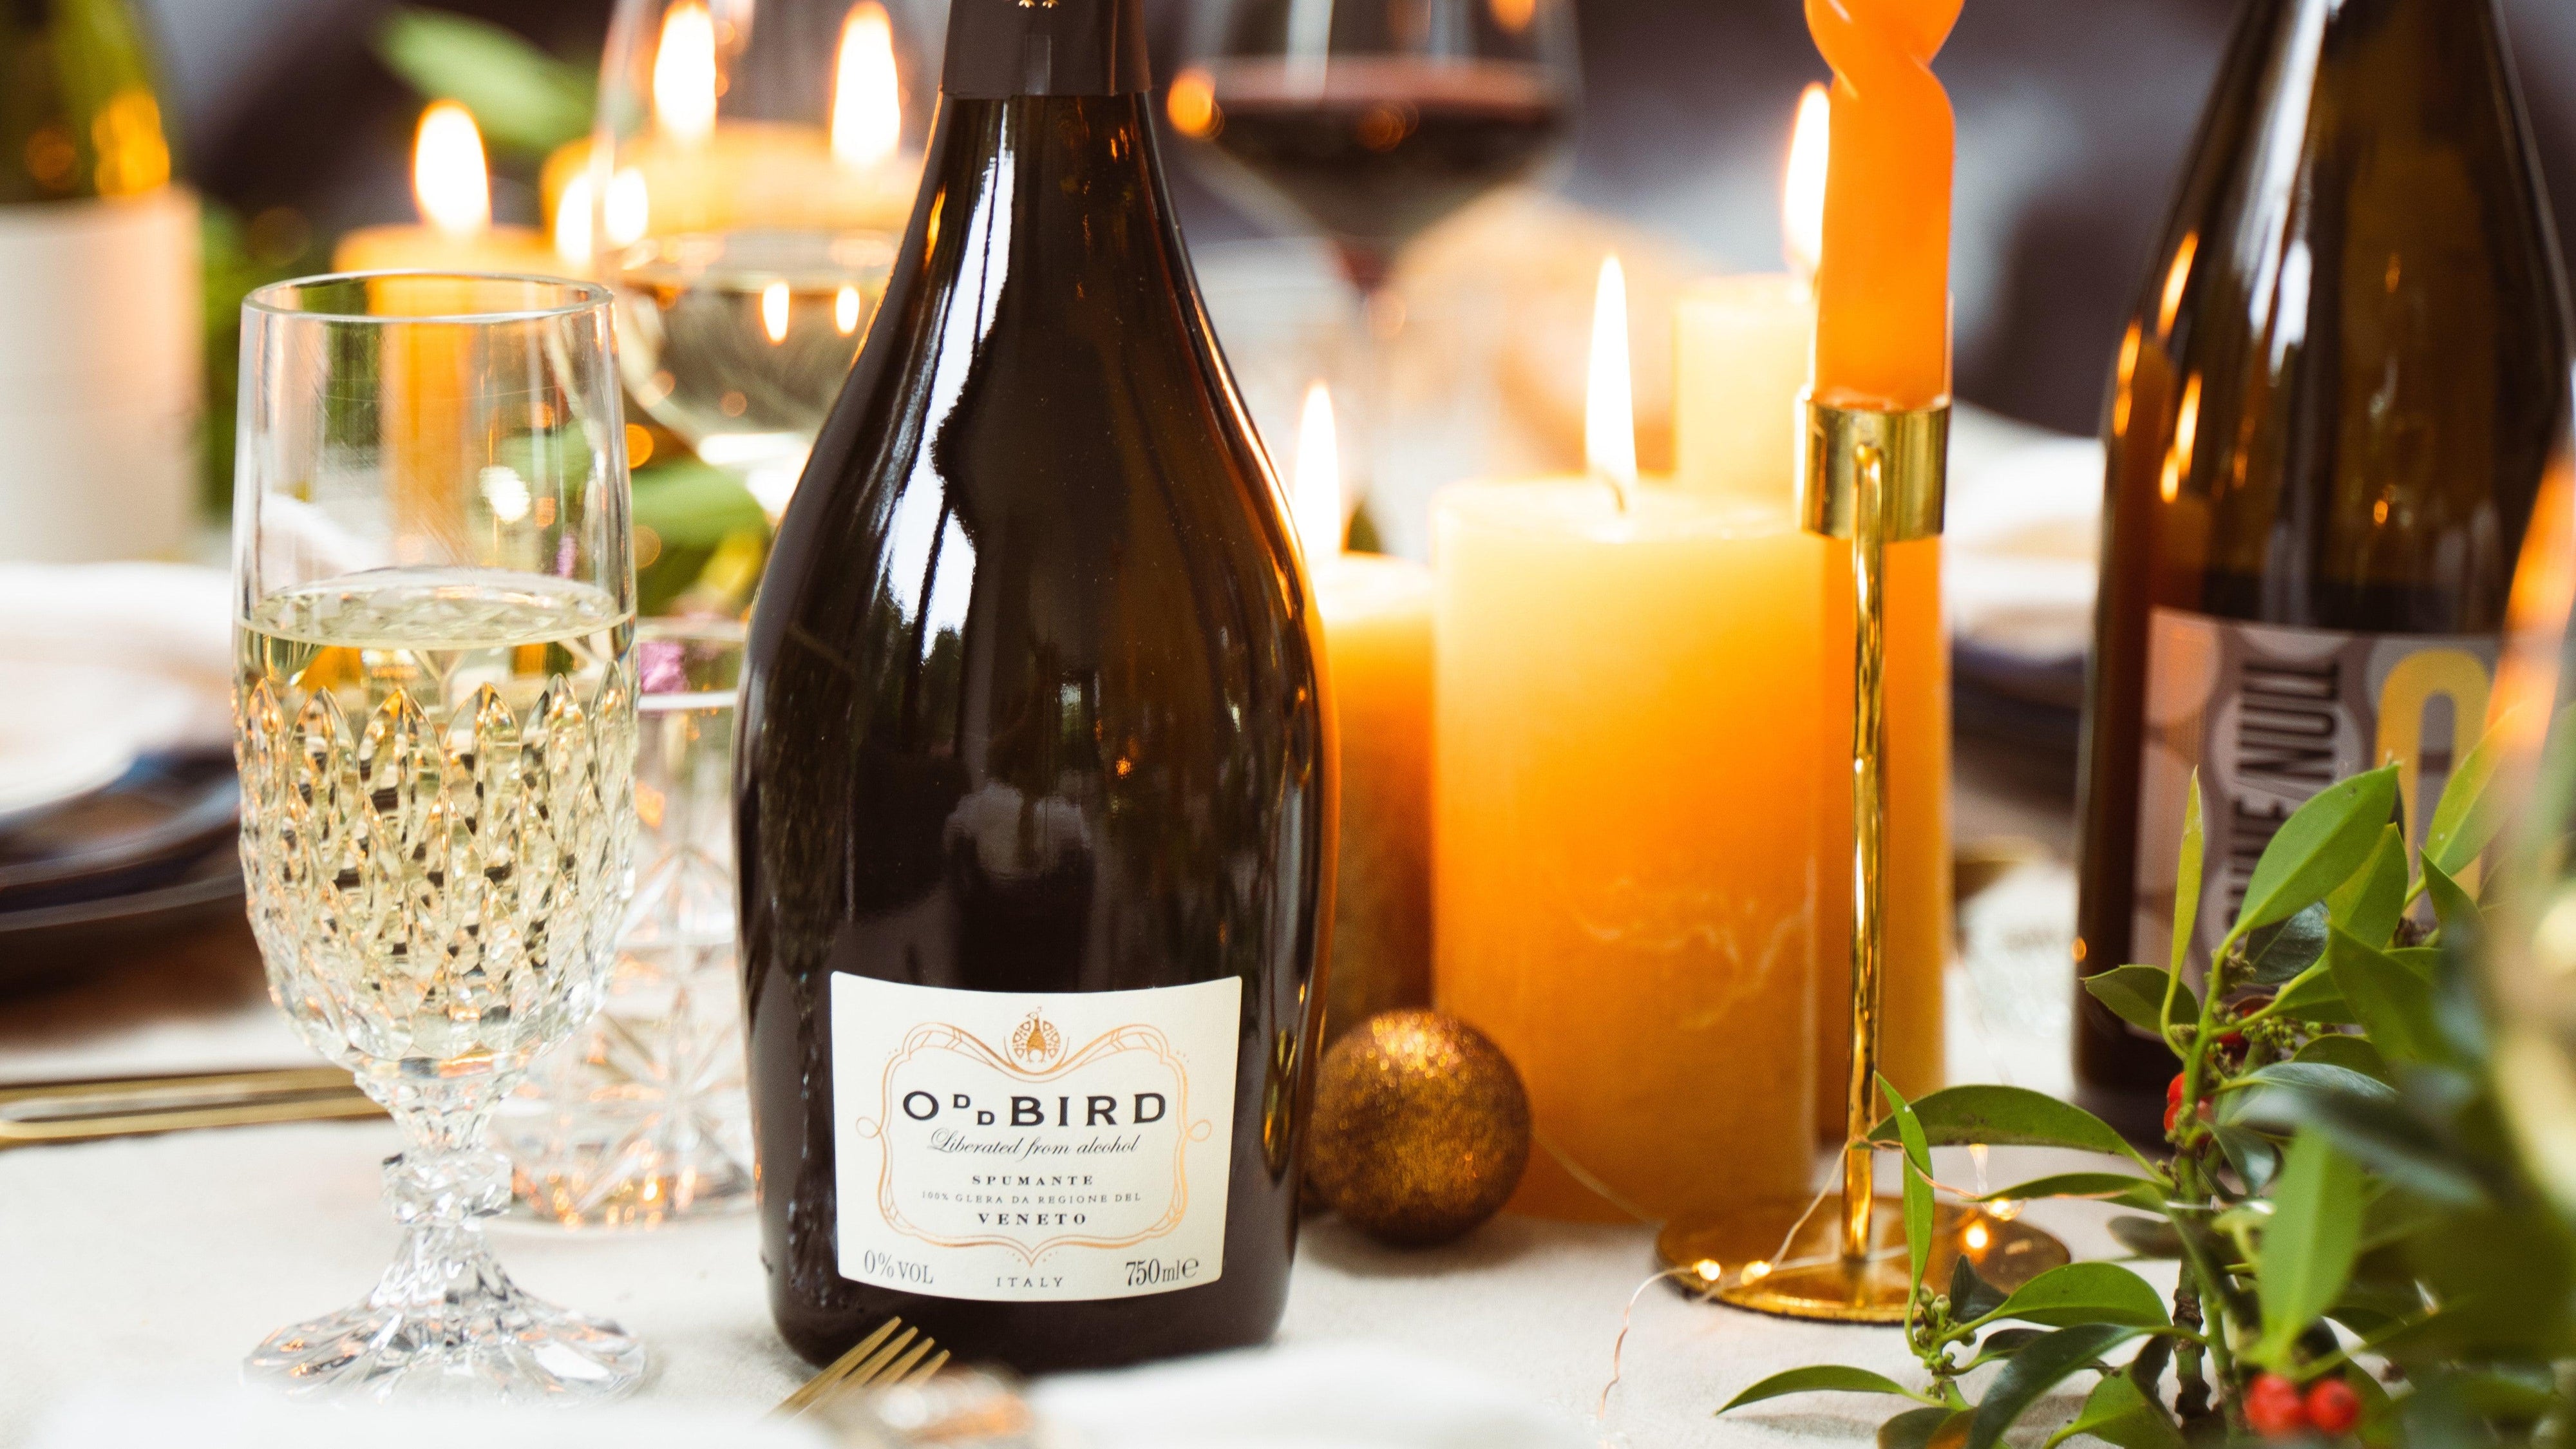 Fles alcoholvrije prosecco van Oddbird op een feestelijk gedekte tafel.